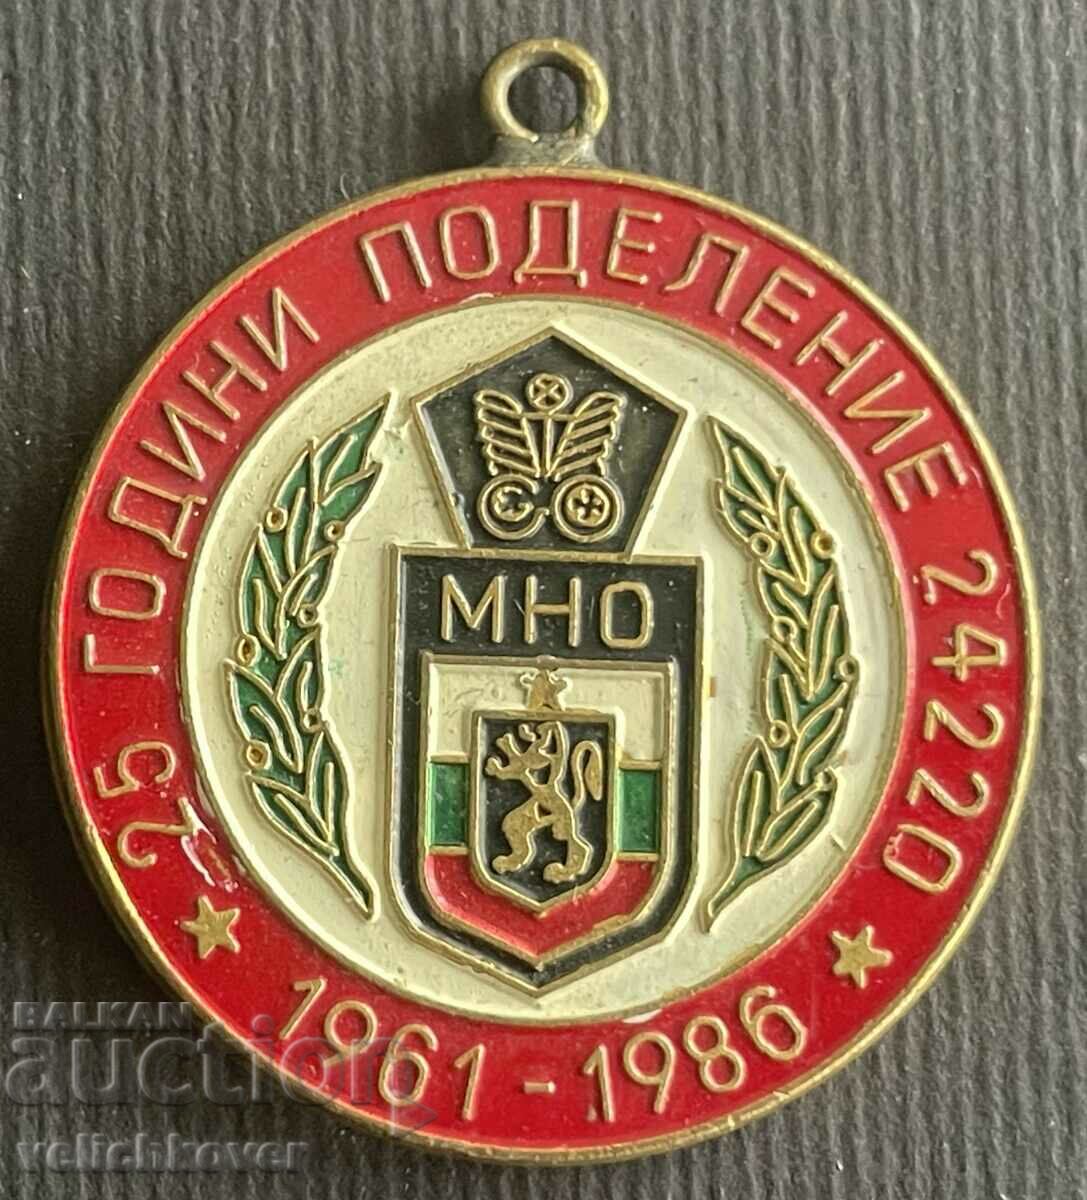 35794 България медал 25г. Поделение 24220 София 1986г.